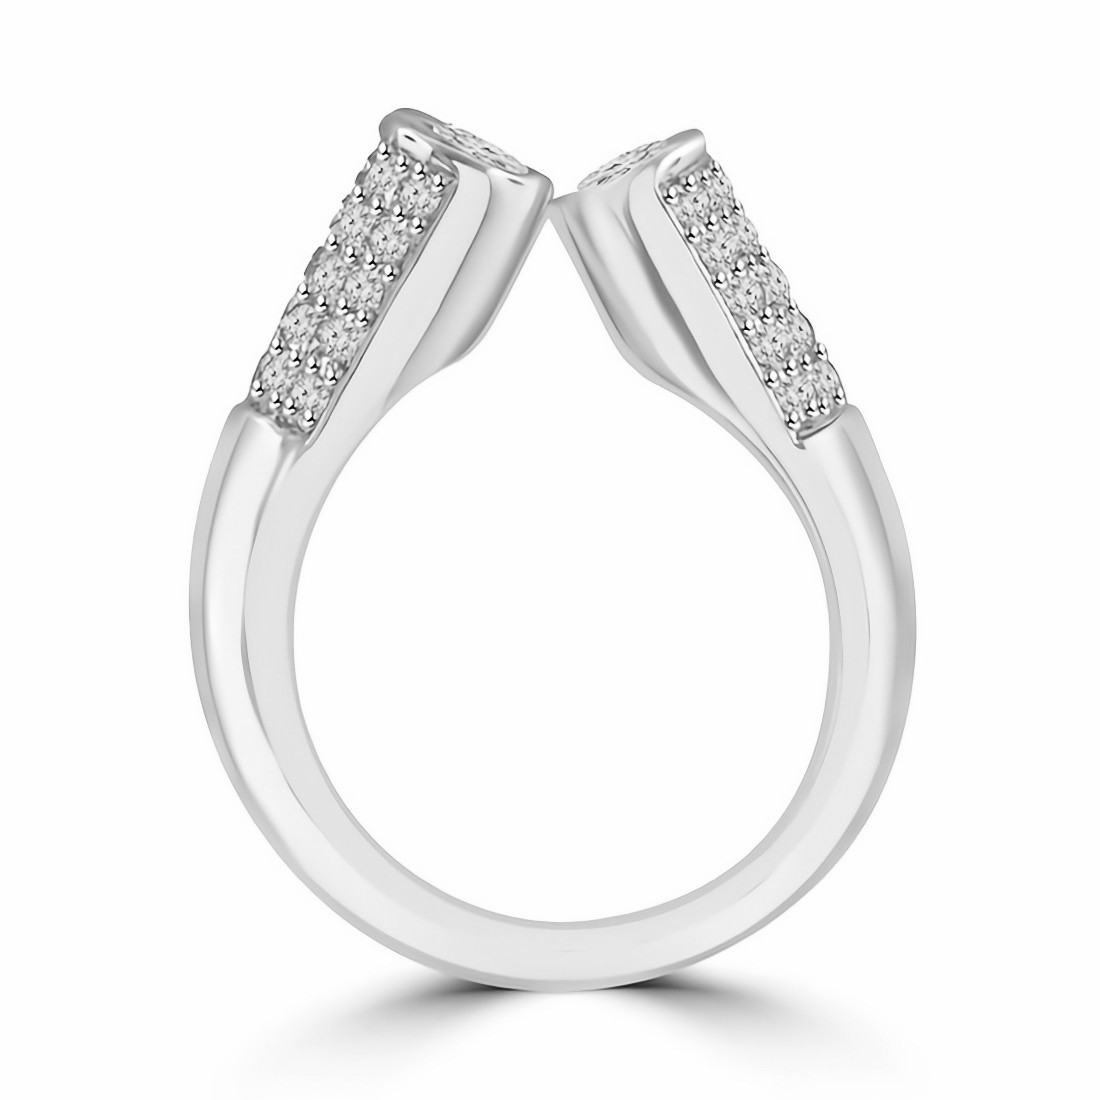 Trendy Clear CZ Revolving Full Finger Ring | Full finger rings, Ring  designs, Gold finger rings